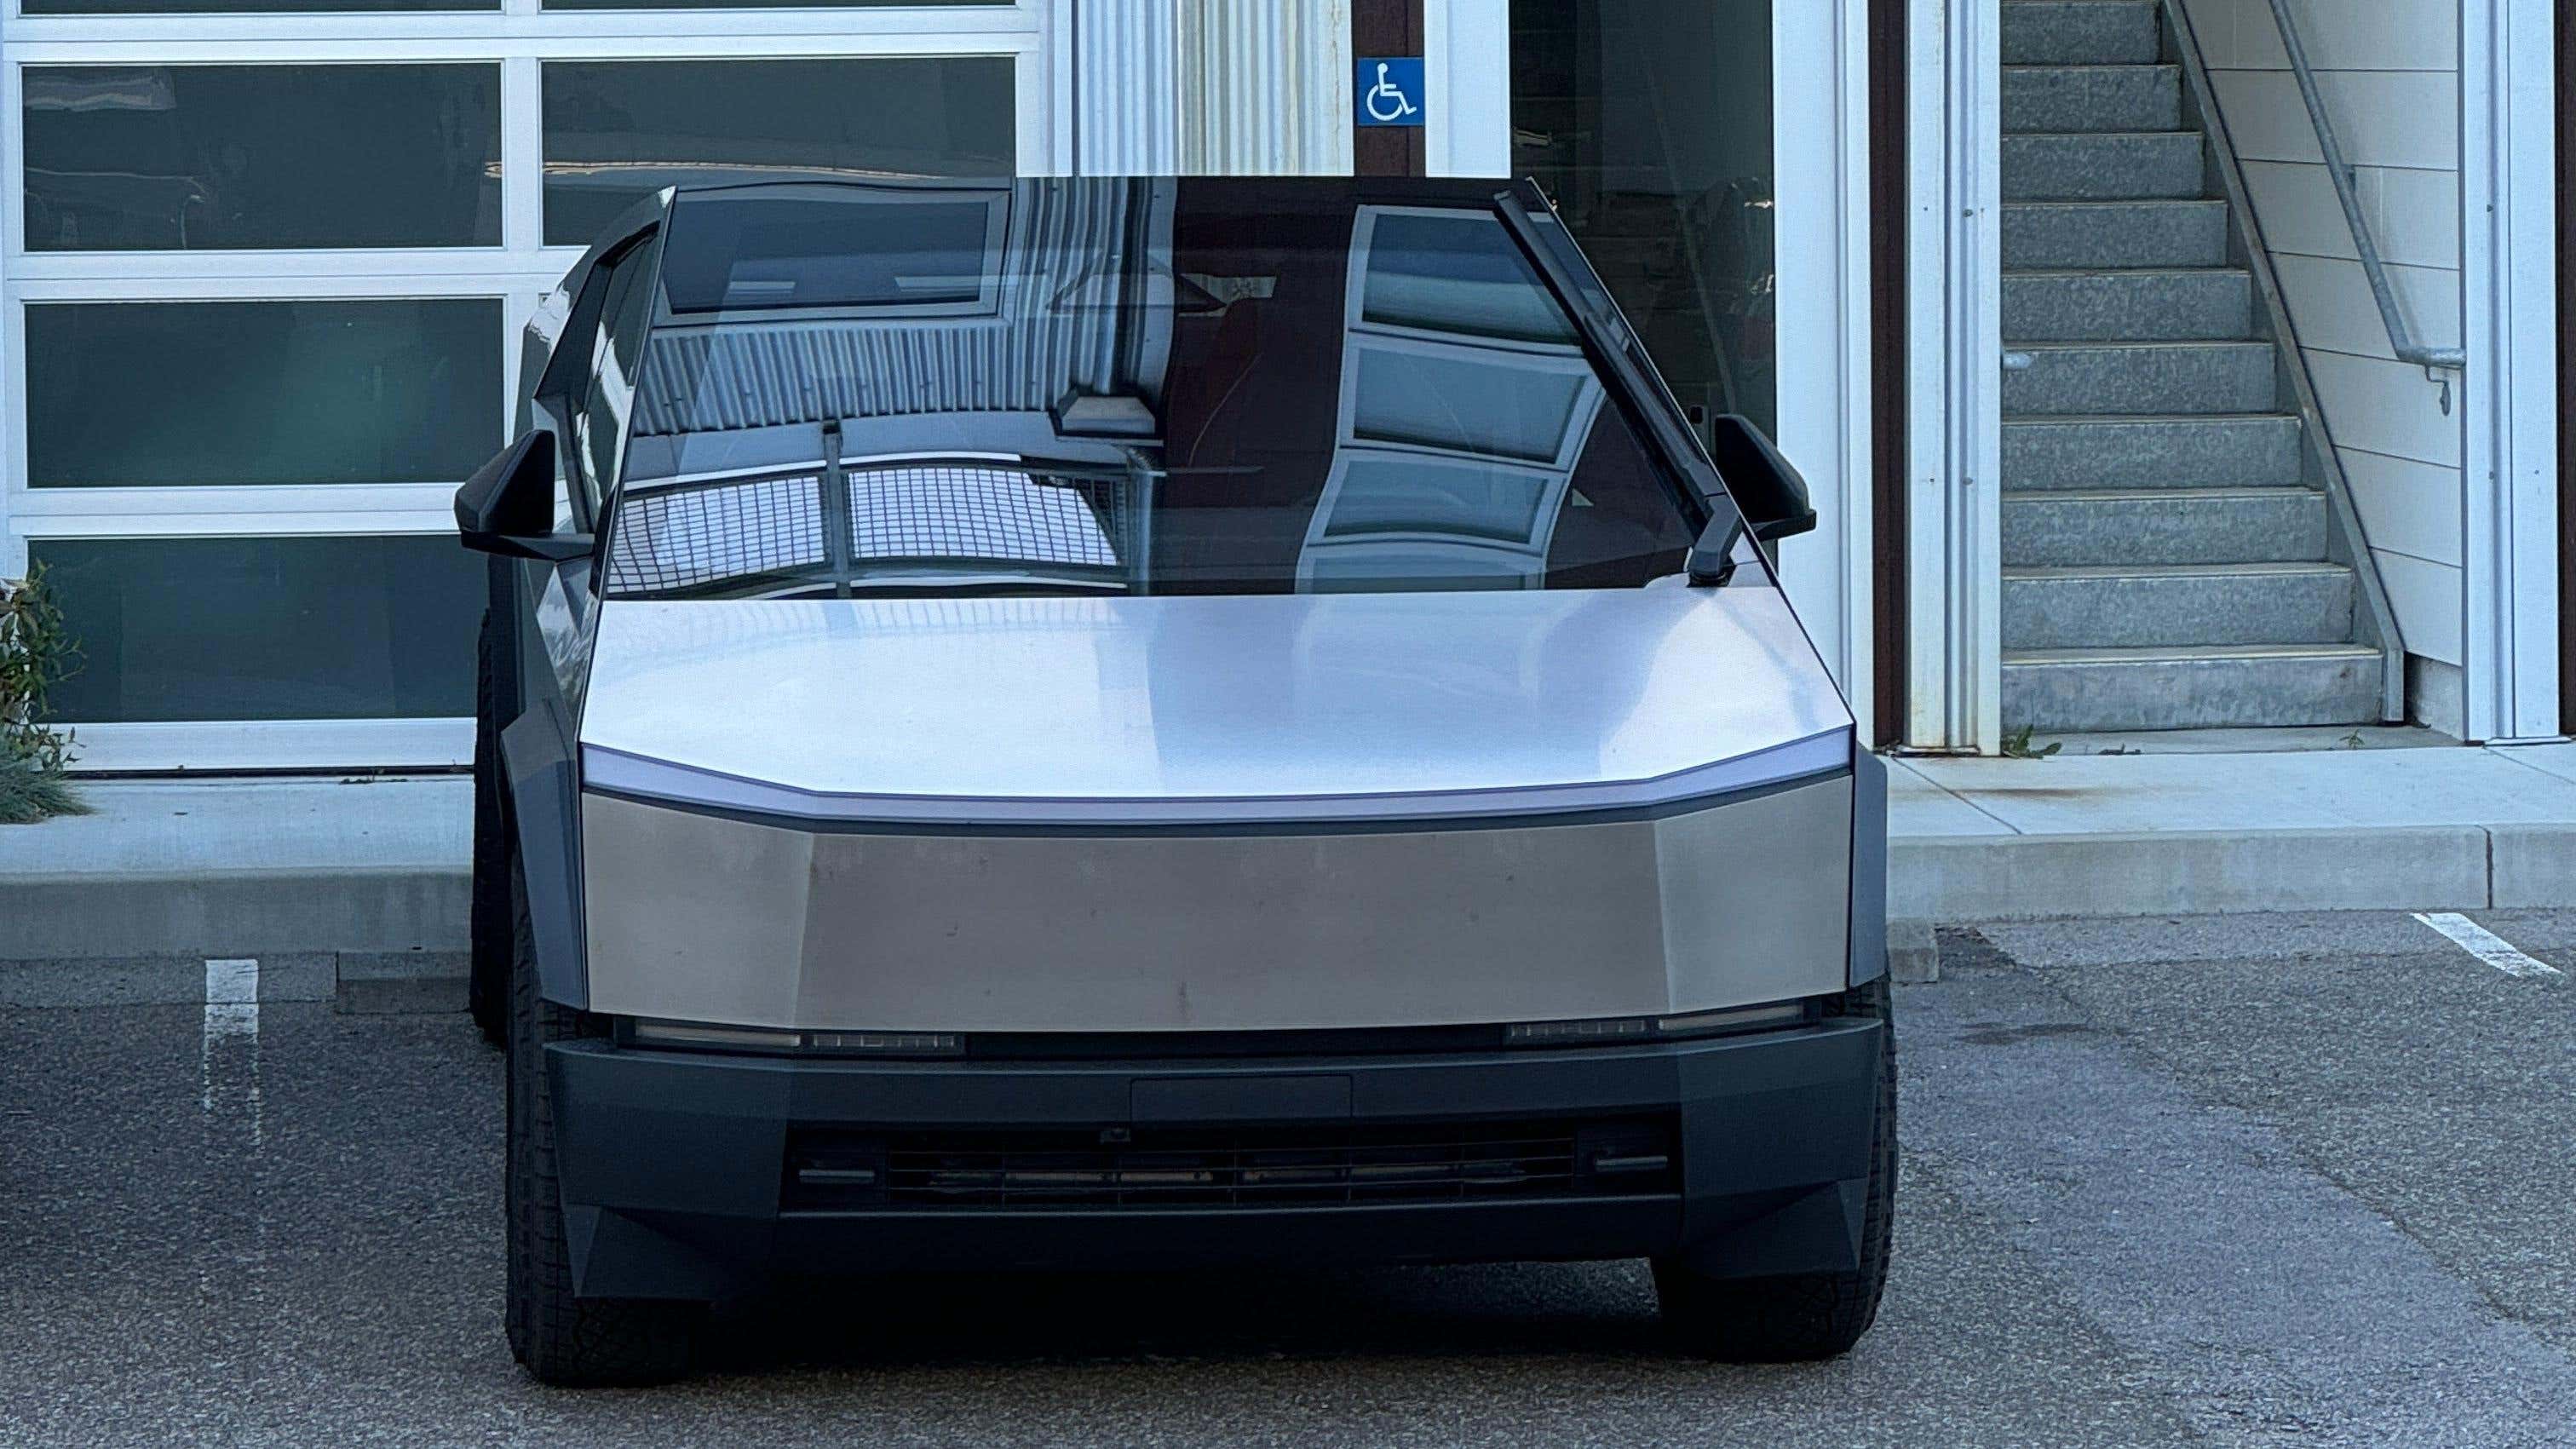 Arabaya Serviste Araç Yıkama Tesla Cybertruck için Çok Fazlaydı başlıklı makale için resim